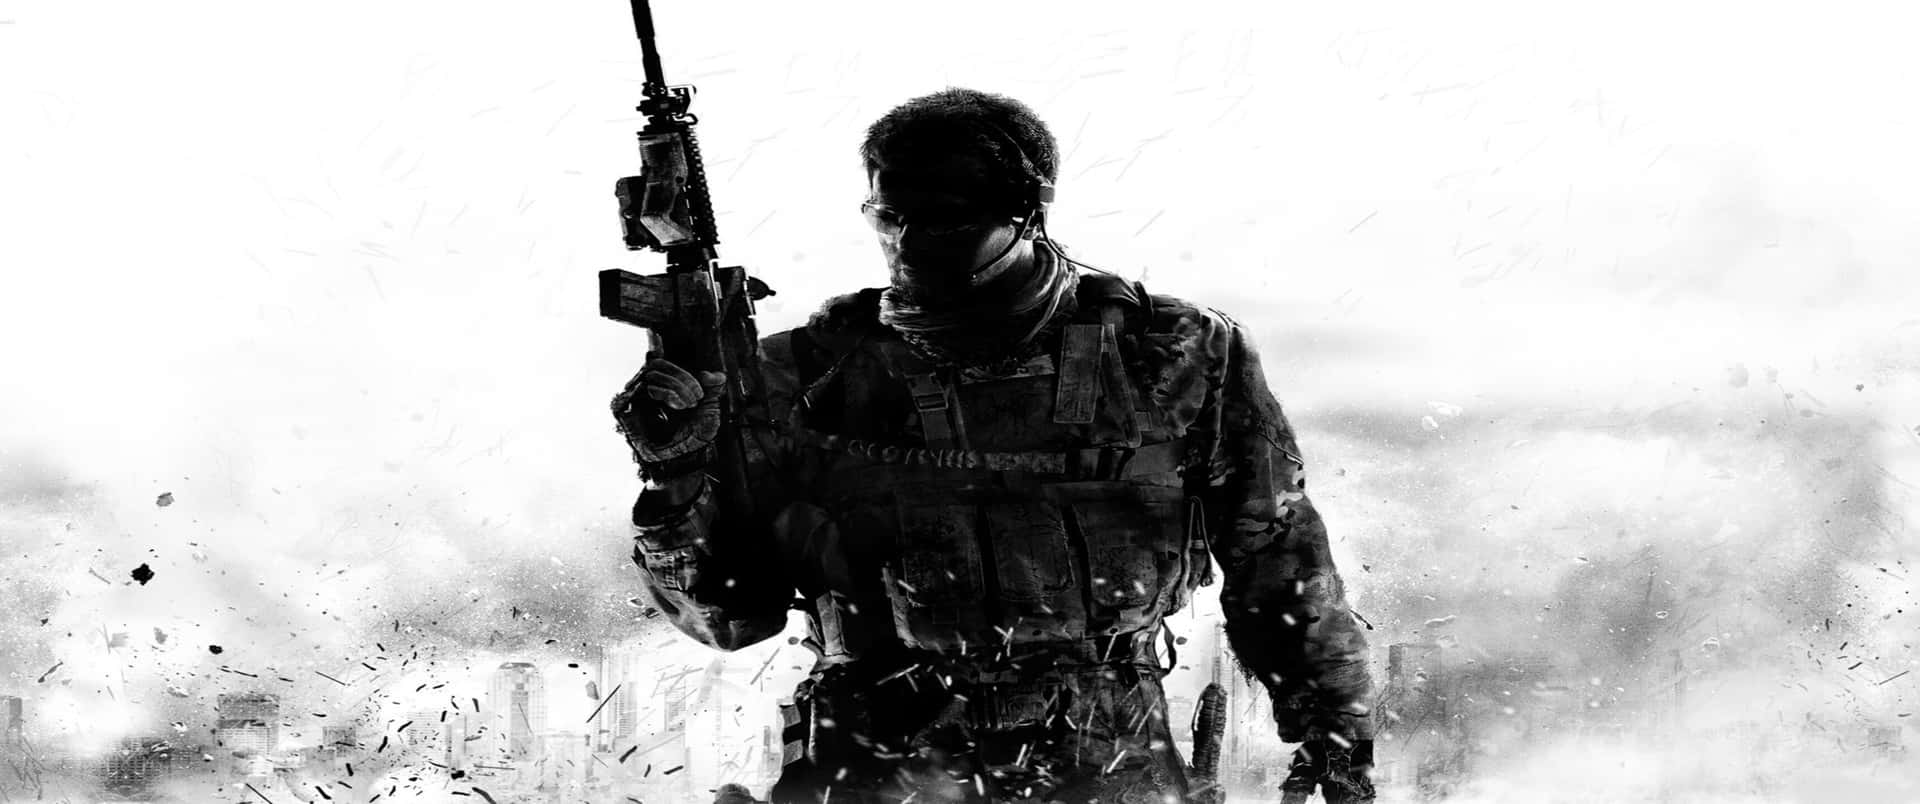 Fondode Pantalla De Call Of Duty Modern Warfare Con Silueta De Soldado 3440x1440p.